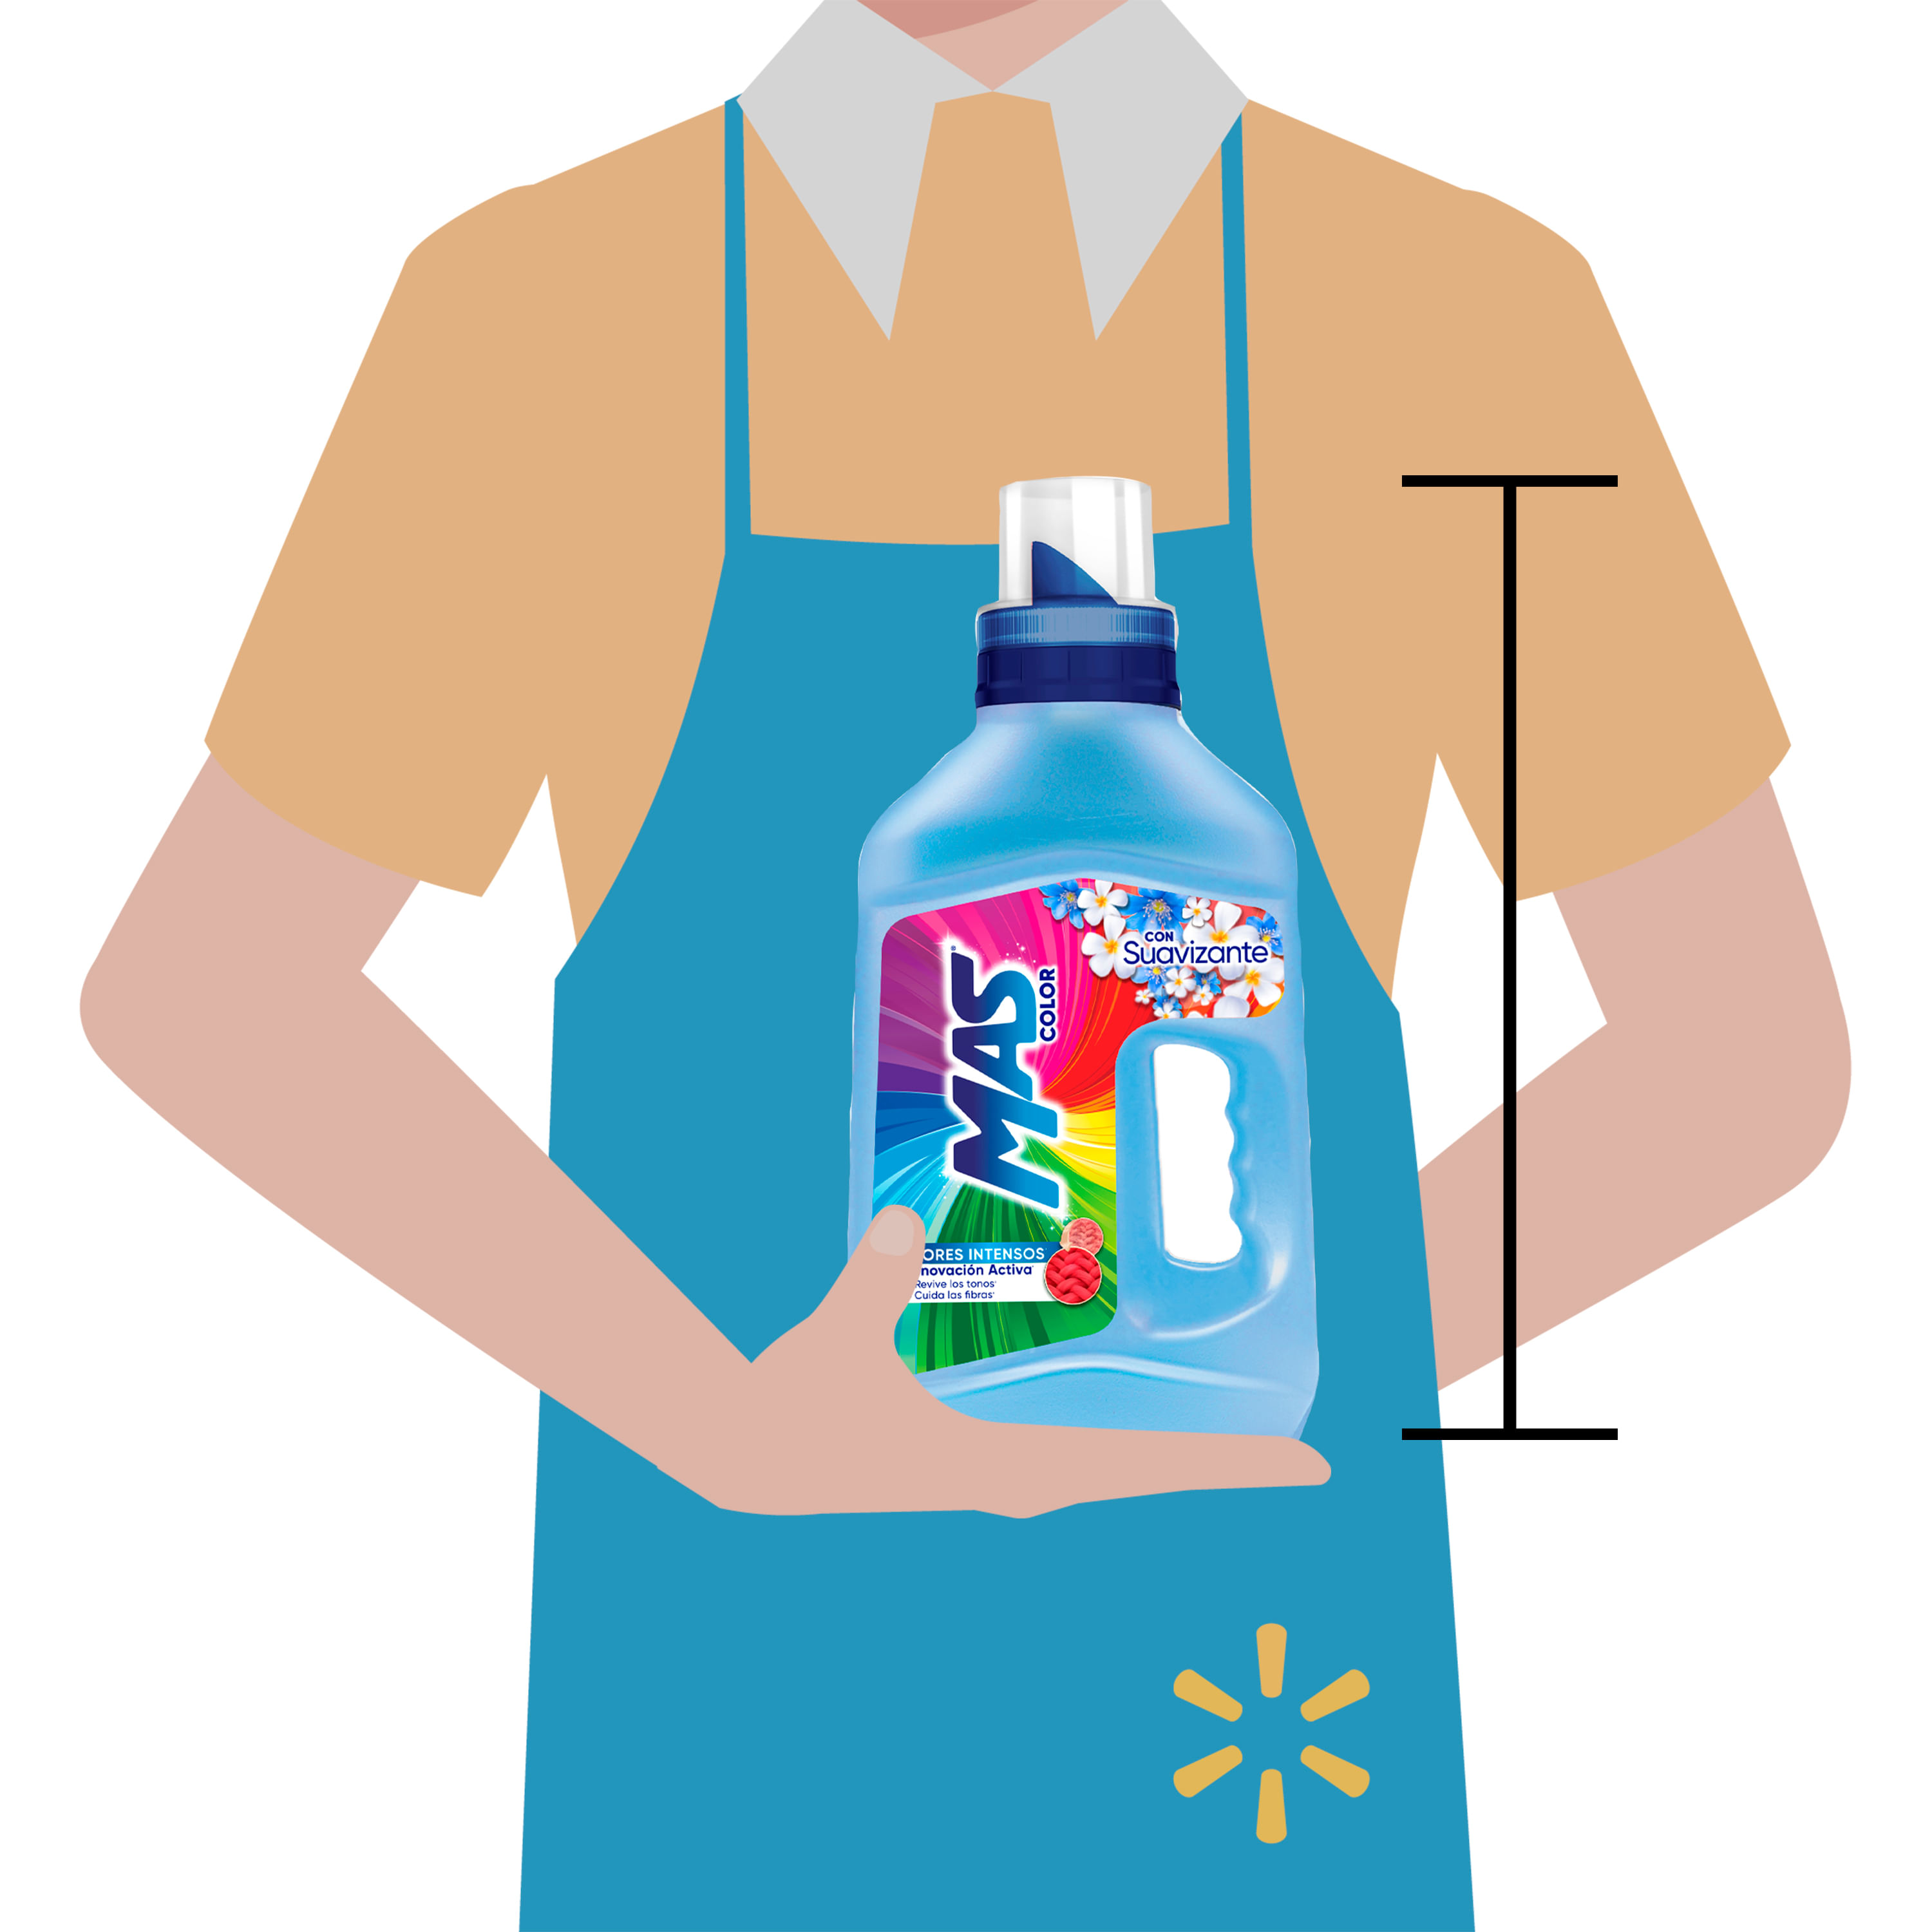 Comprar Detergente Líquido Dreft etapa 2: Bebe Activo, 32 lavadas